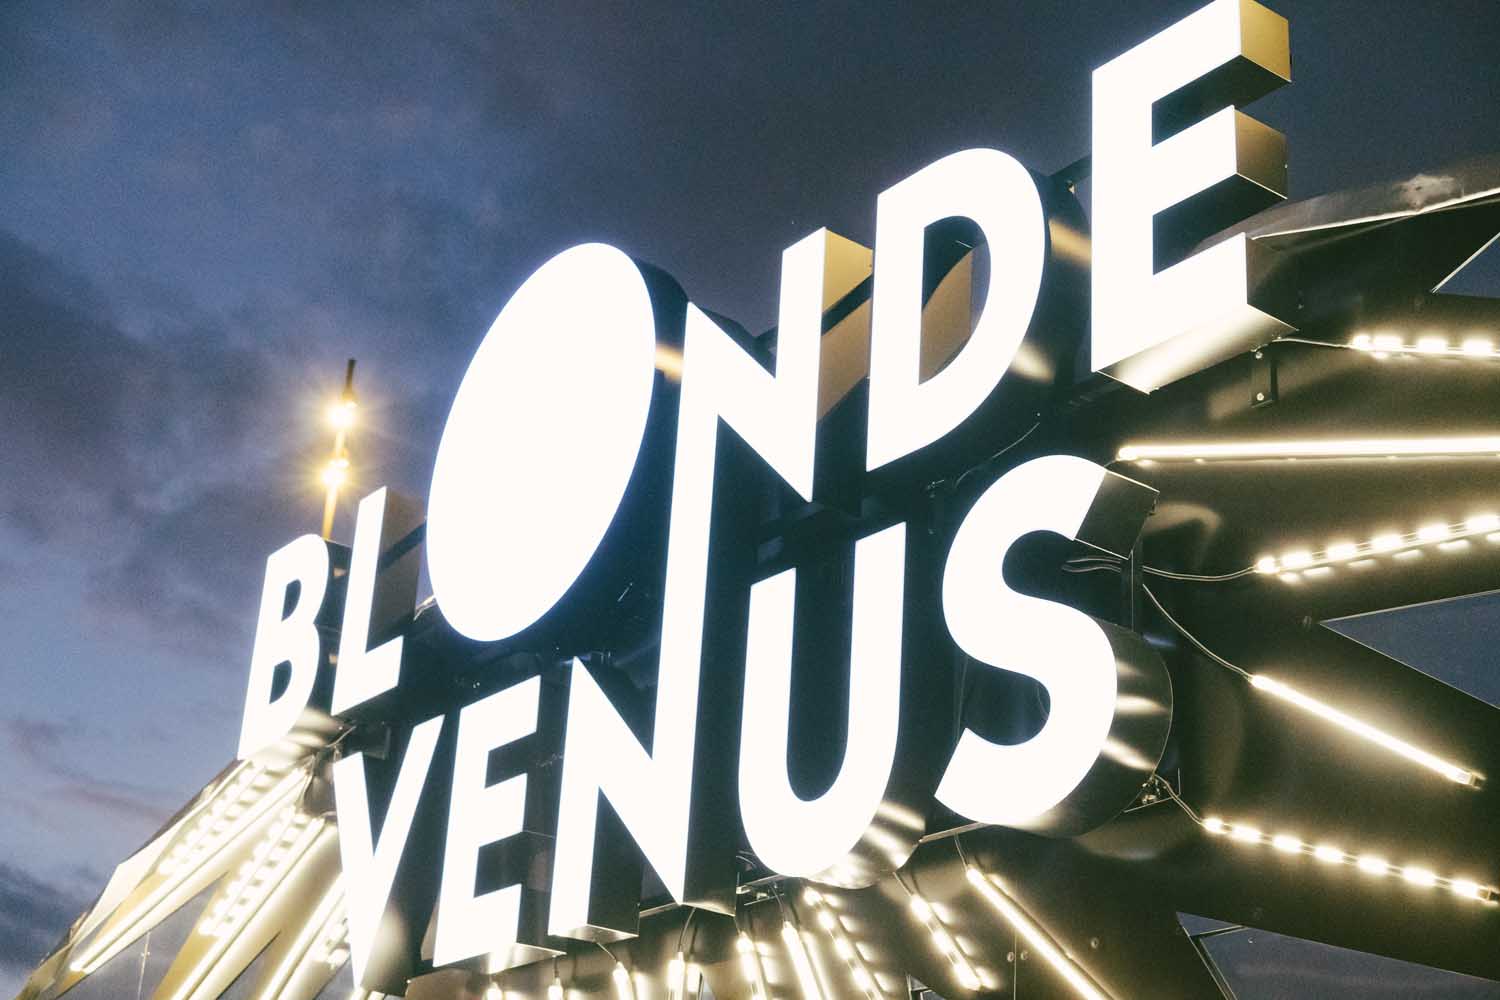 Neons Blonde Venus